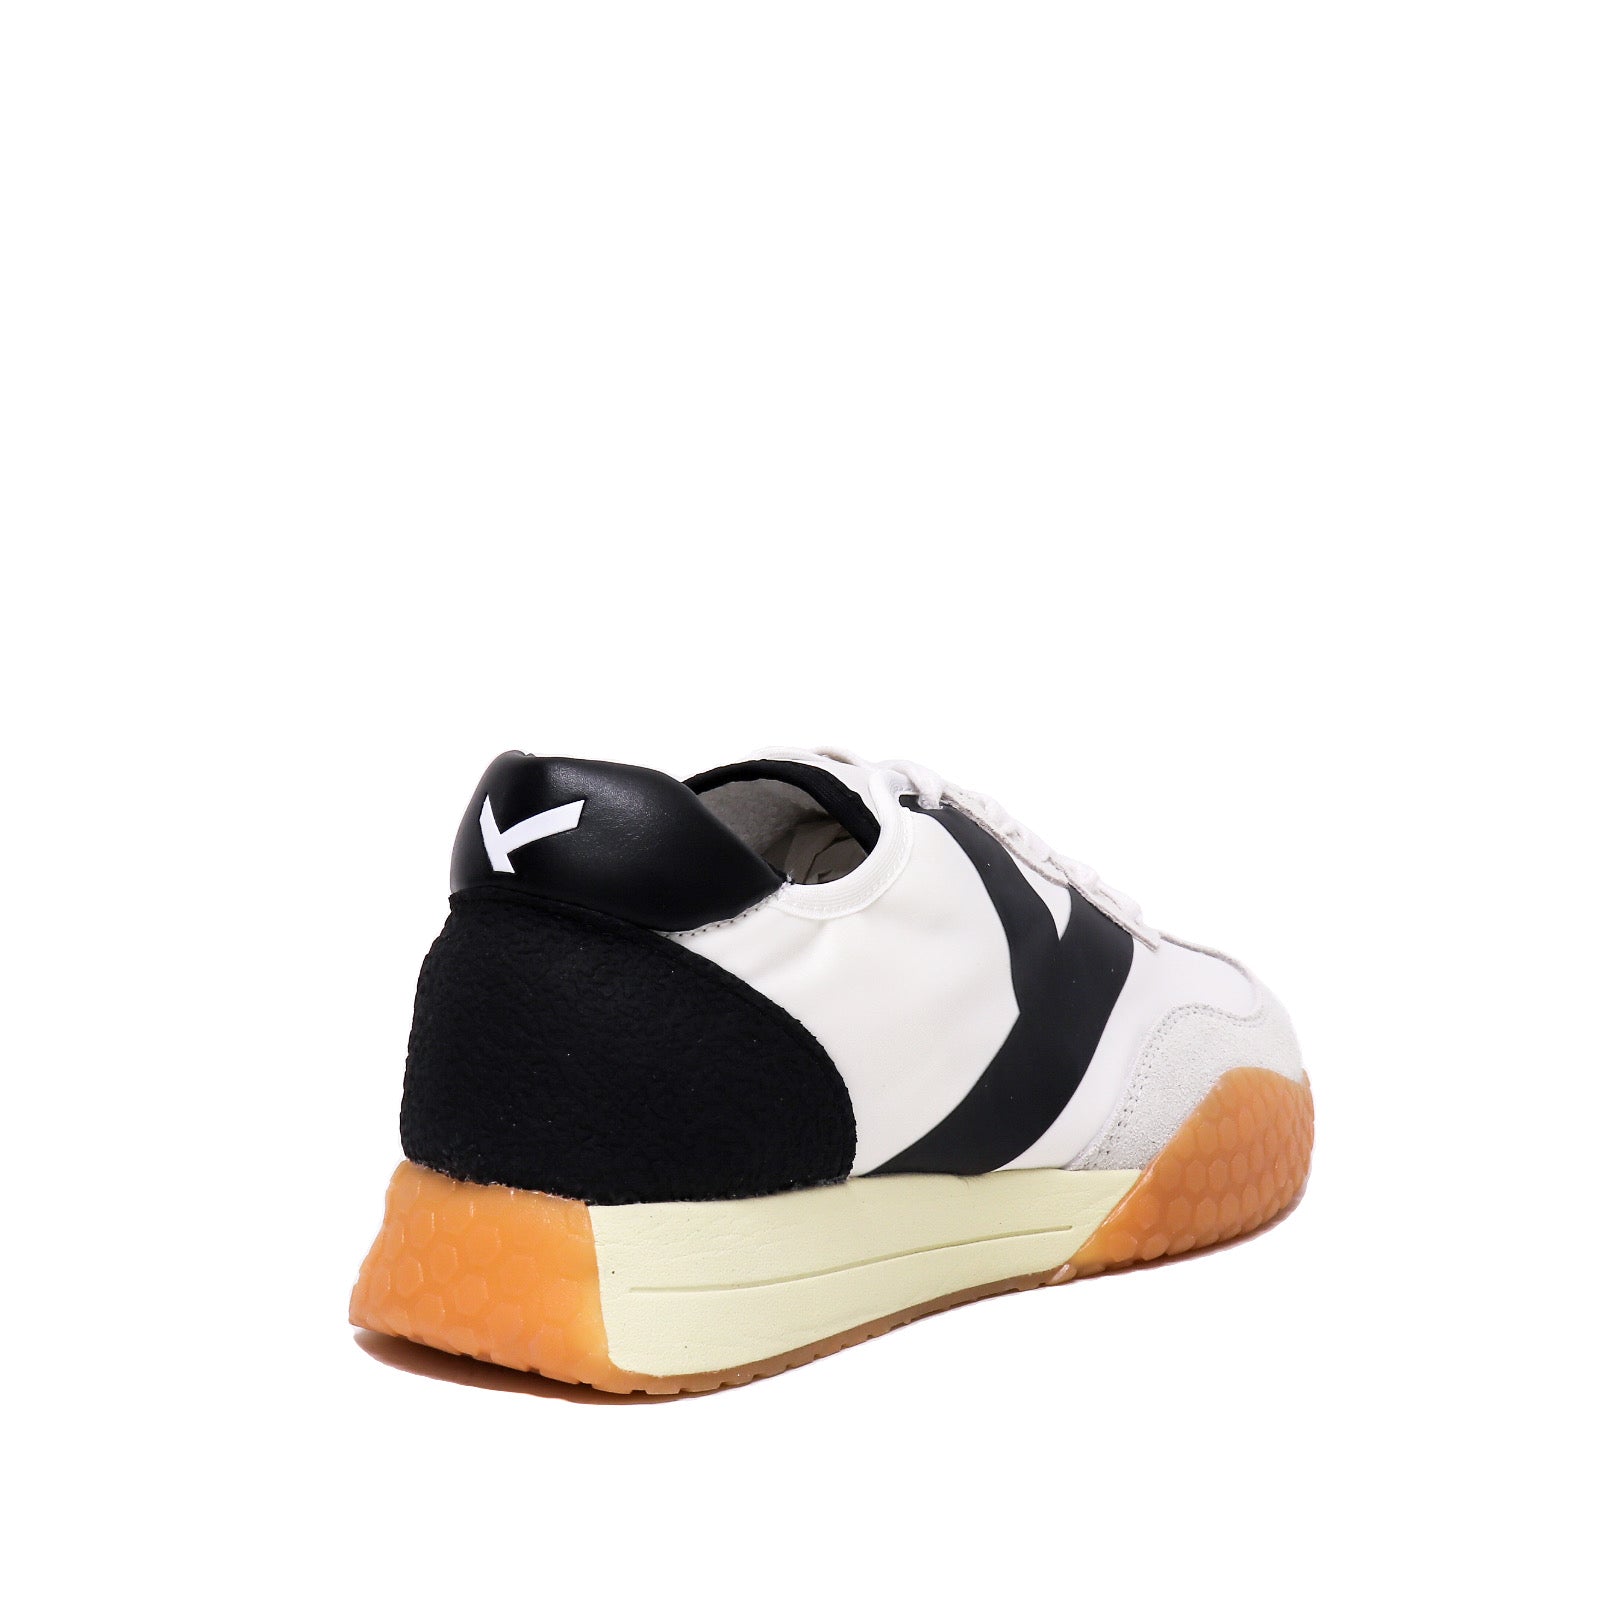 Keh-Noo Sneaker White/Black